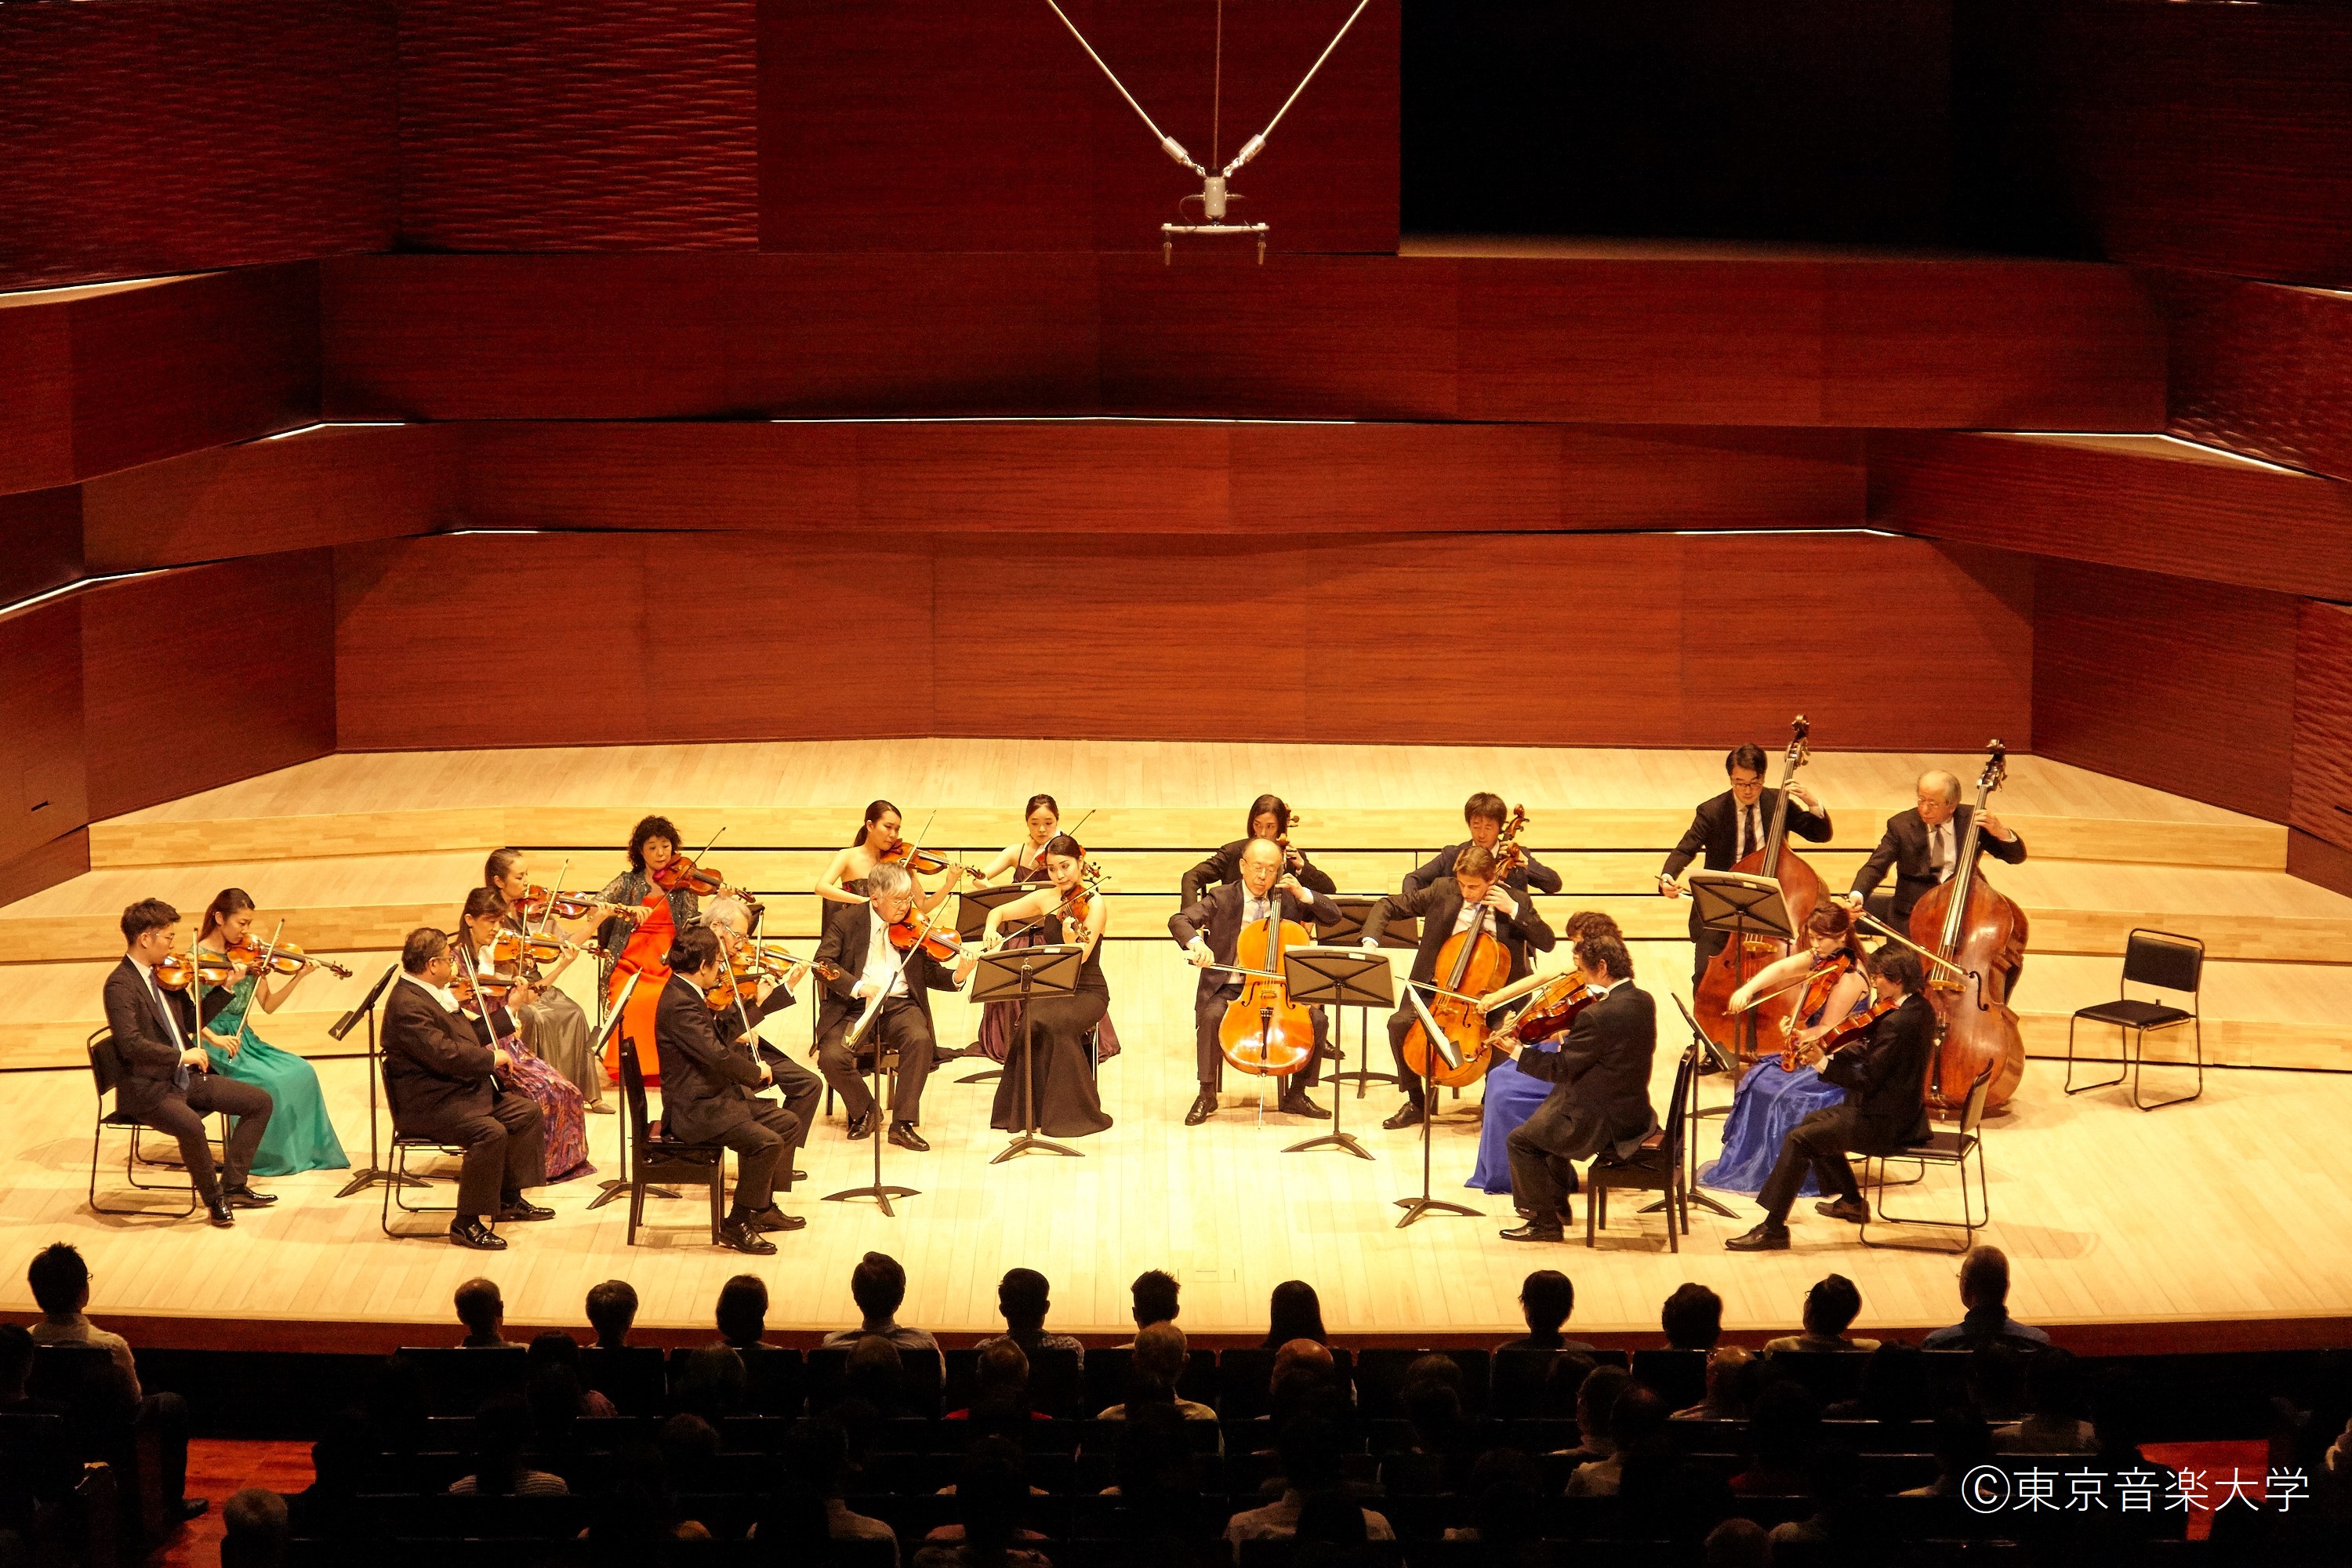 東京音楽大学創立111周年記念演奏会シリーズ 弦楽器部会主催 弦楽アンサンブル演奏会のレポートを掲載しました